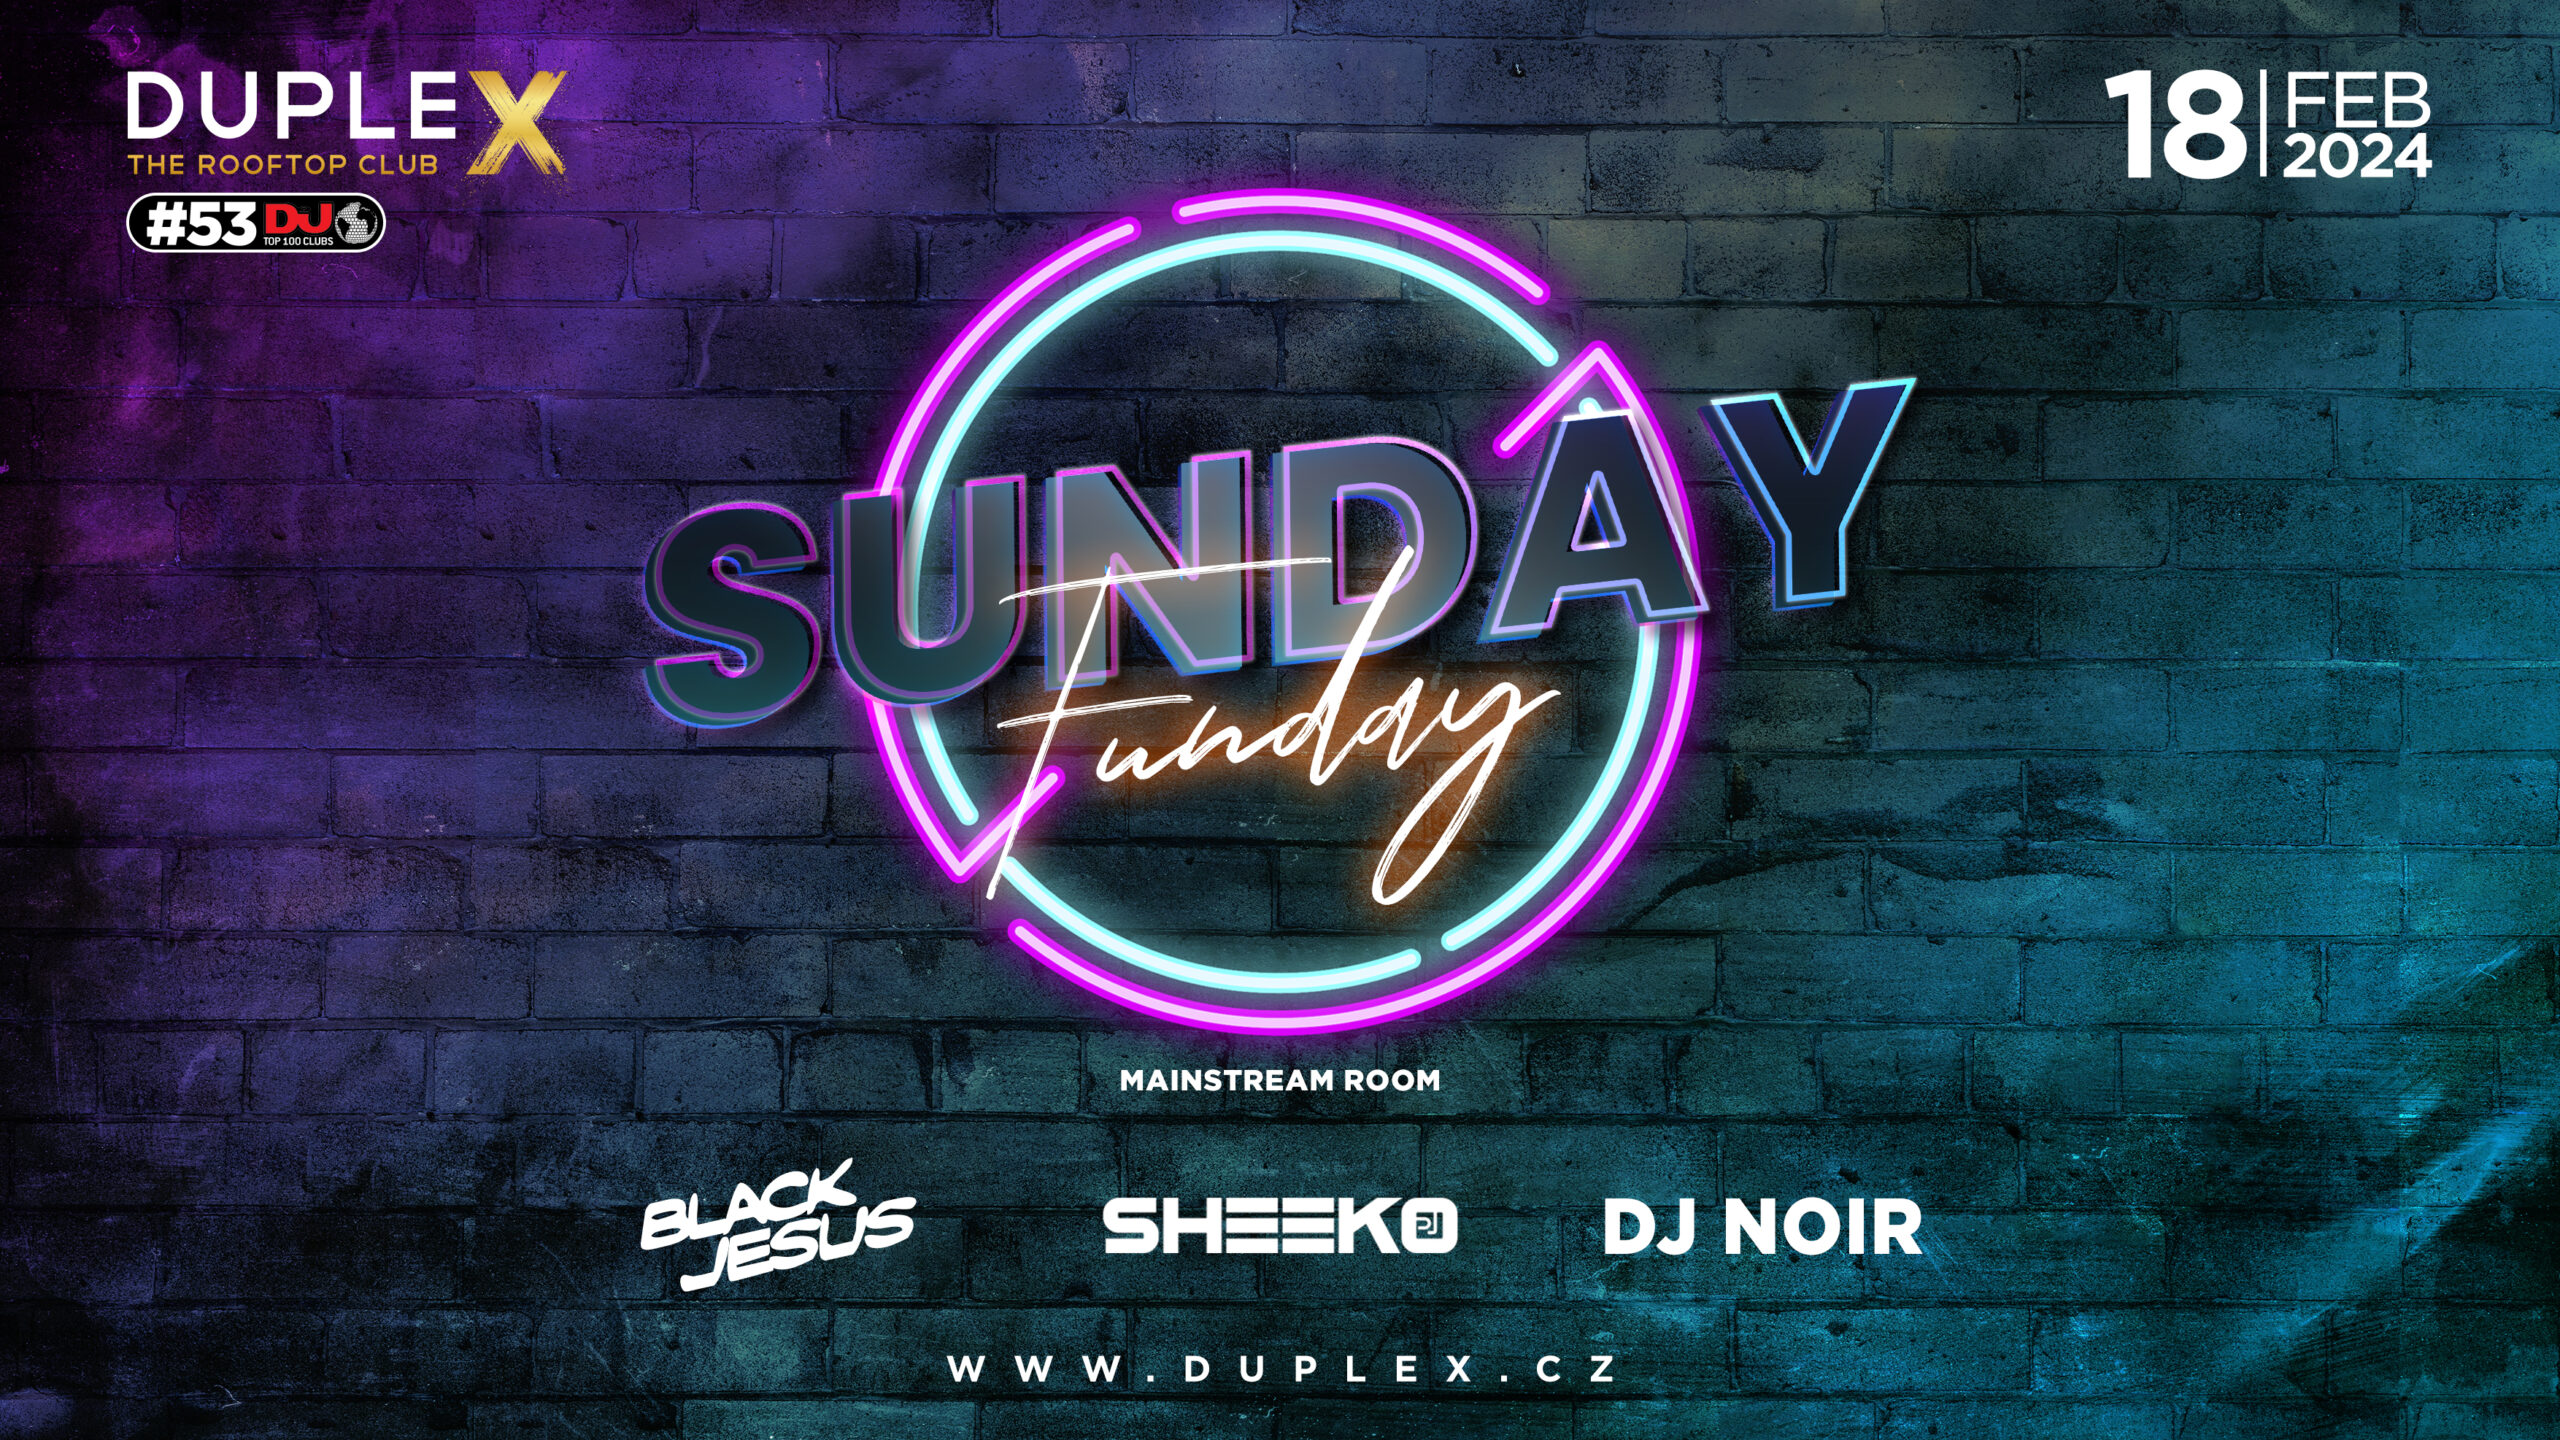 SUNDAY FUNDAY - Sunday Party at DupleX Prague